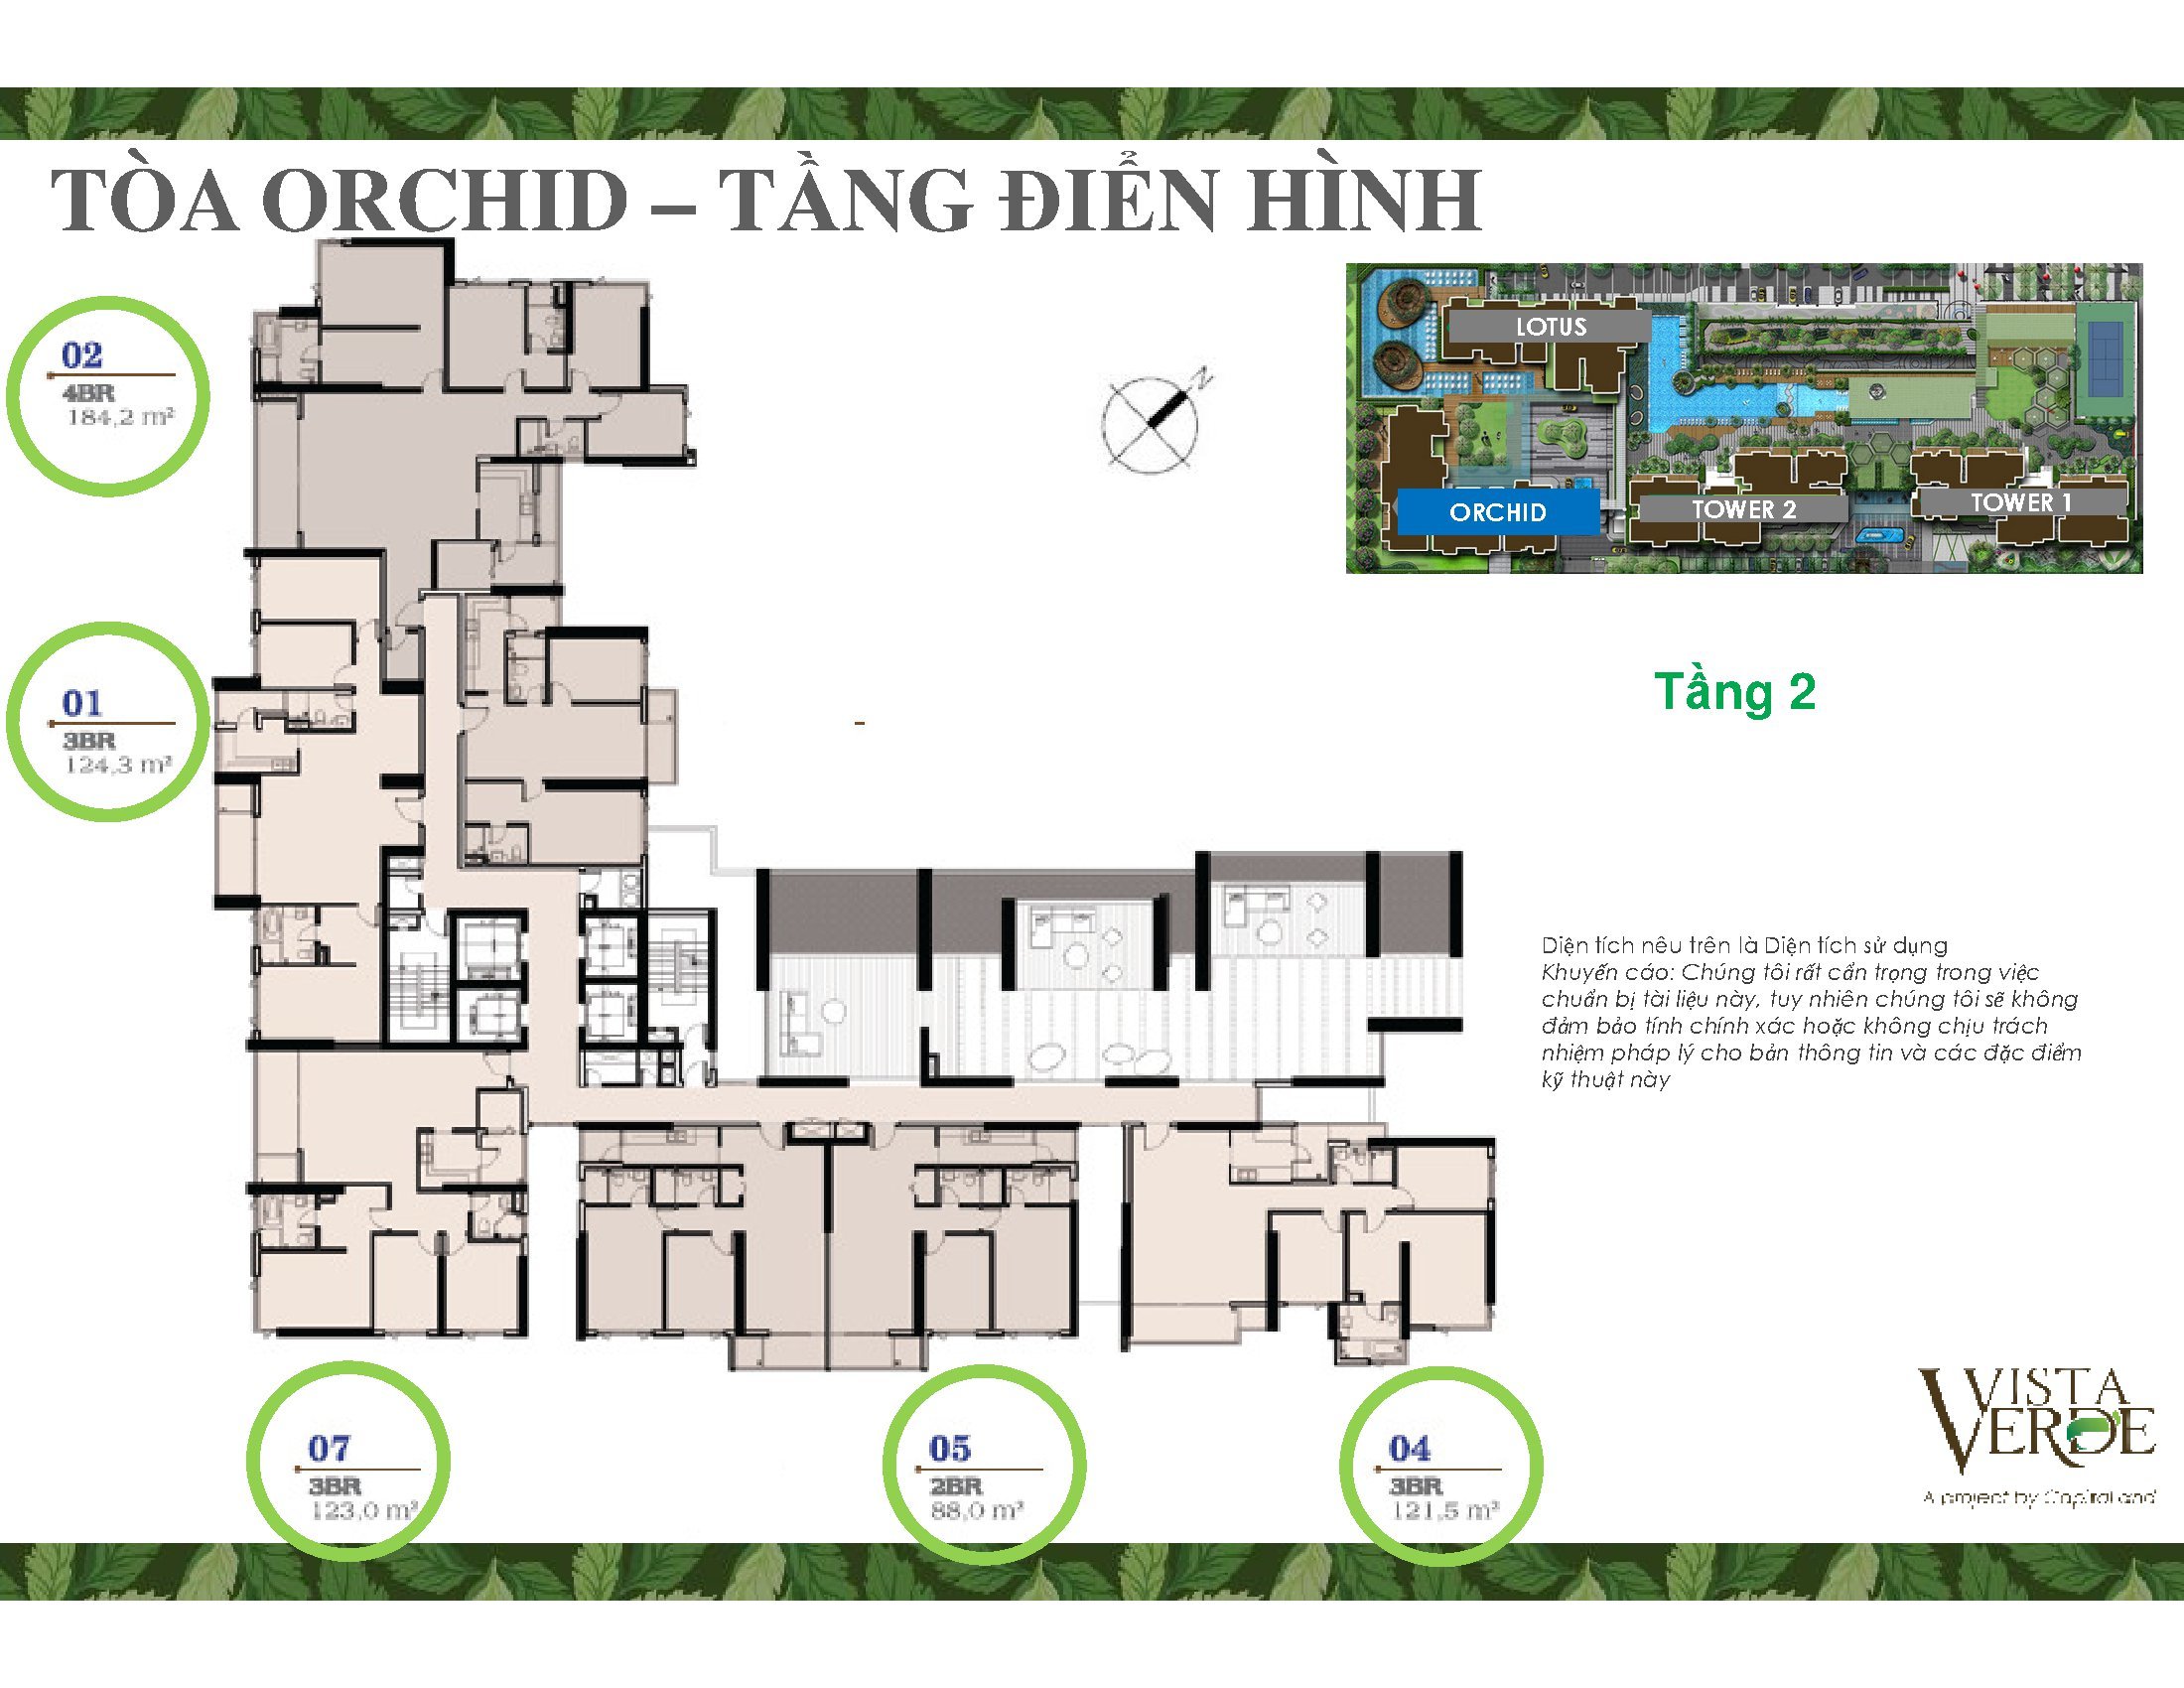 layout-mat-bang-tang-dien-hinh-tang-2-toa-orchid-vista-verde